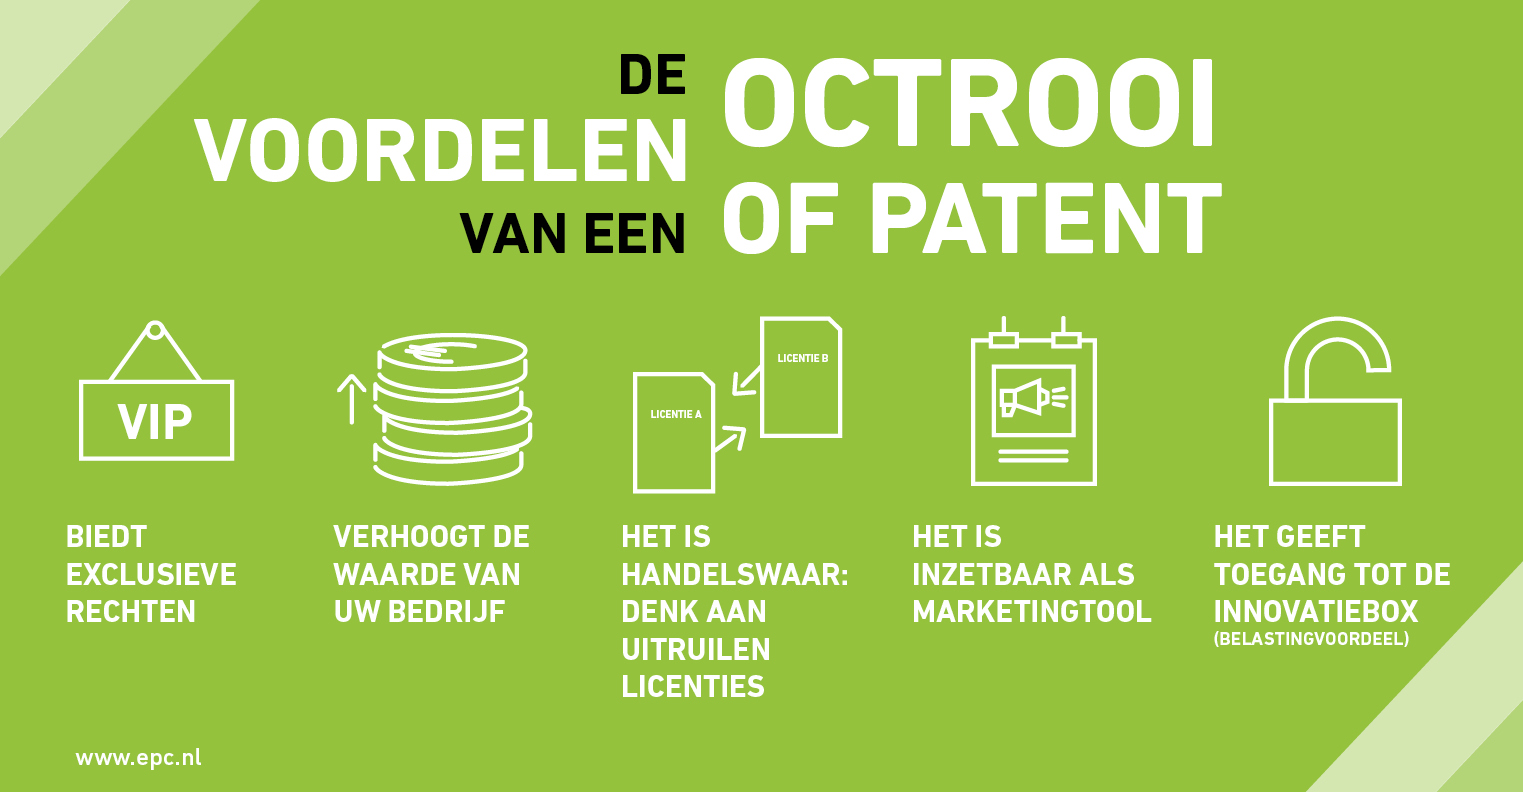 Infographic over de voordelen van een patent of octrooi